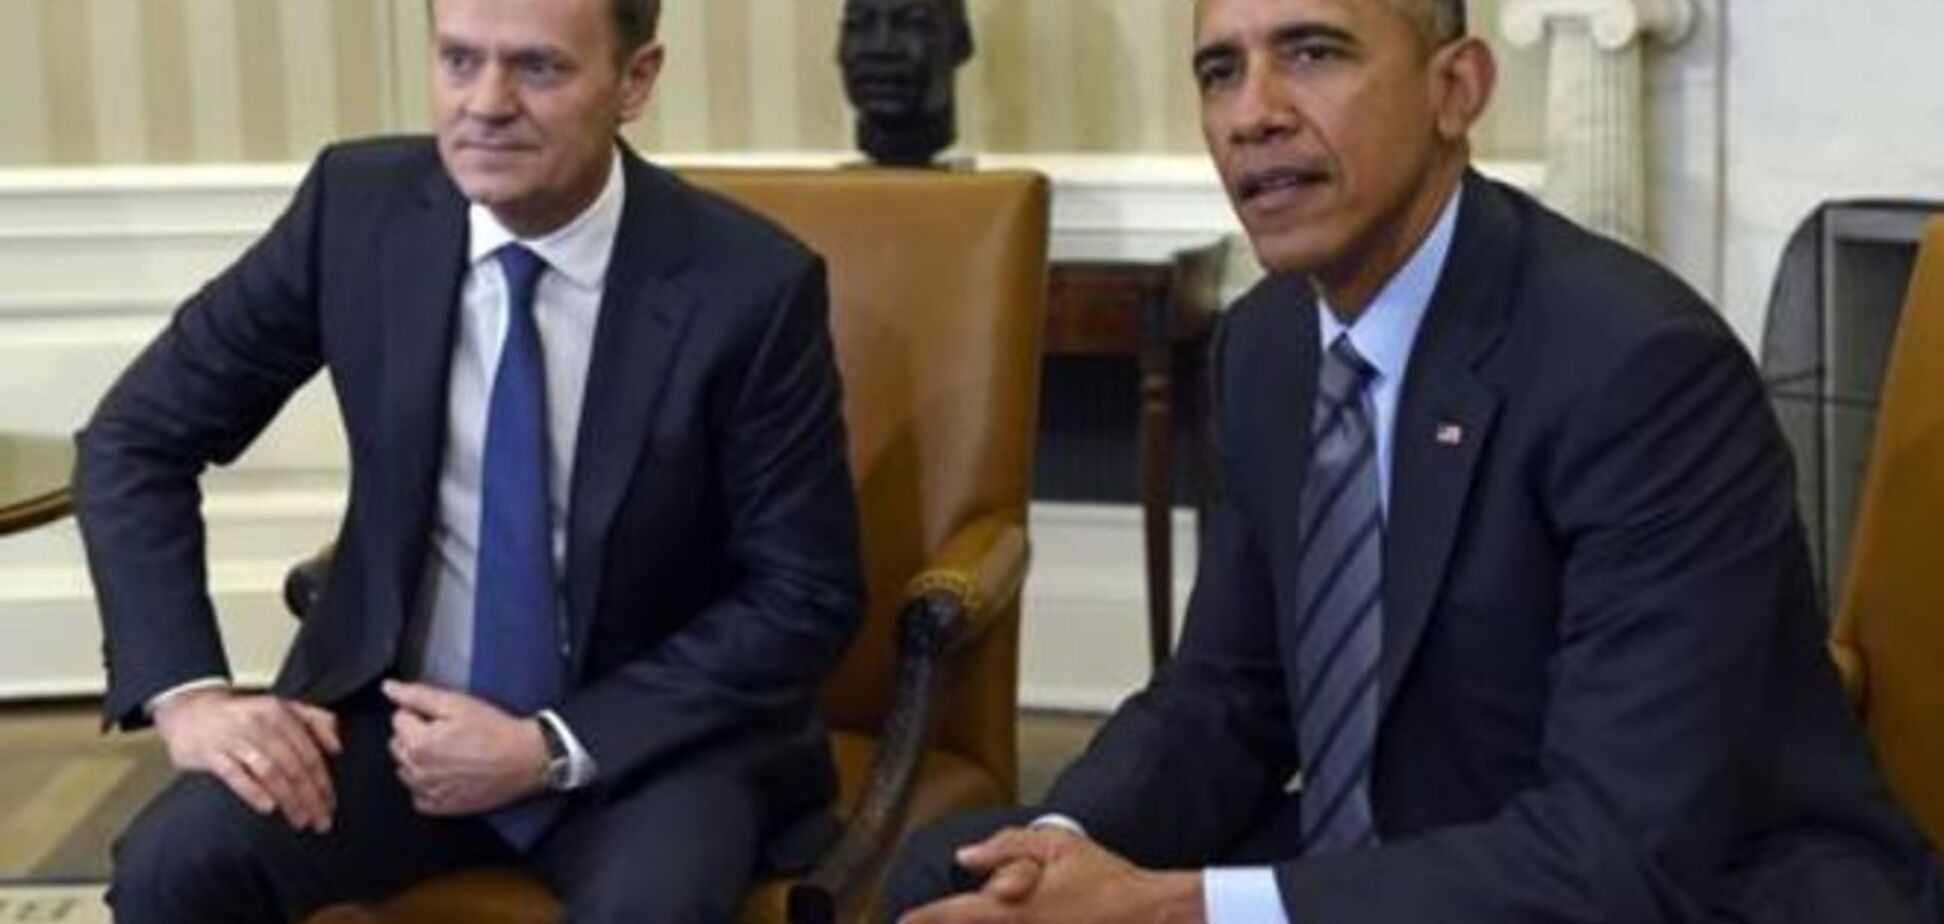 ЕС и США должны поработать над экономическим успехом Украины – Обама